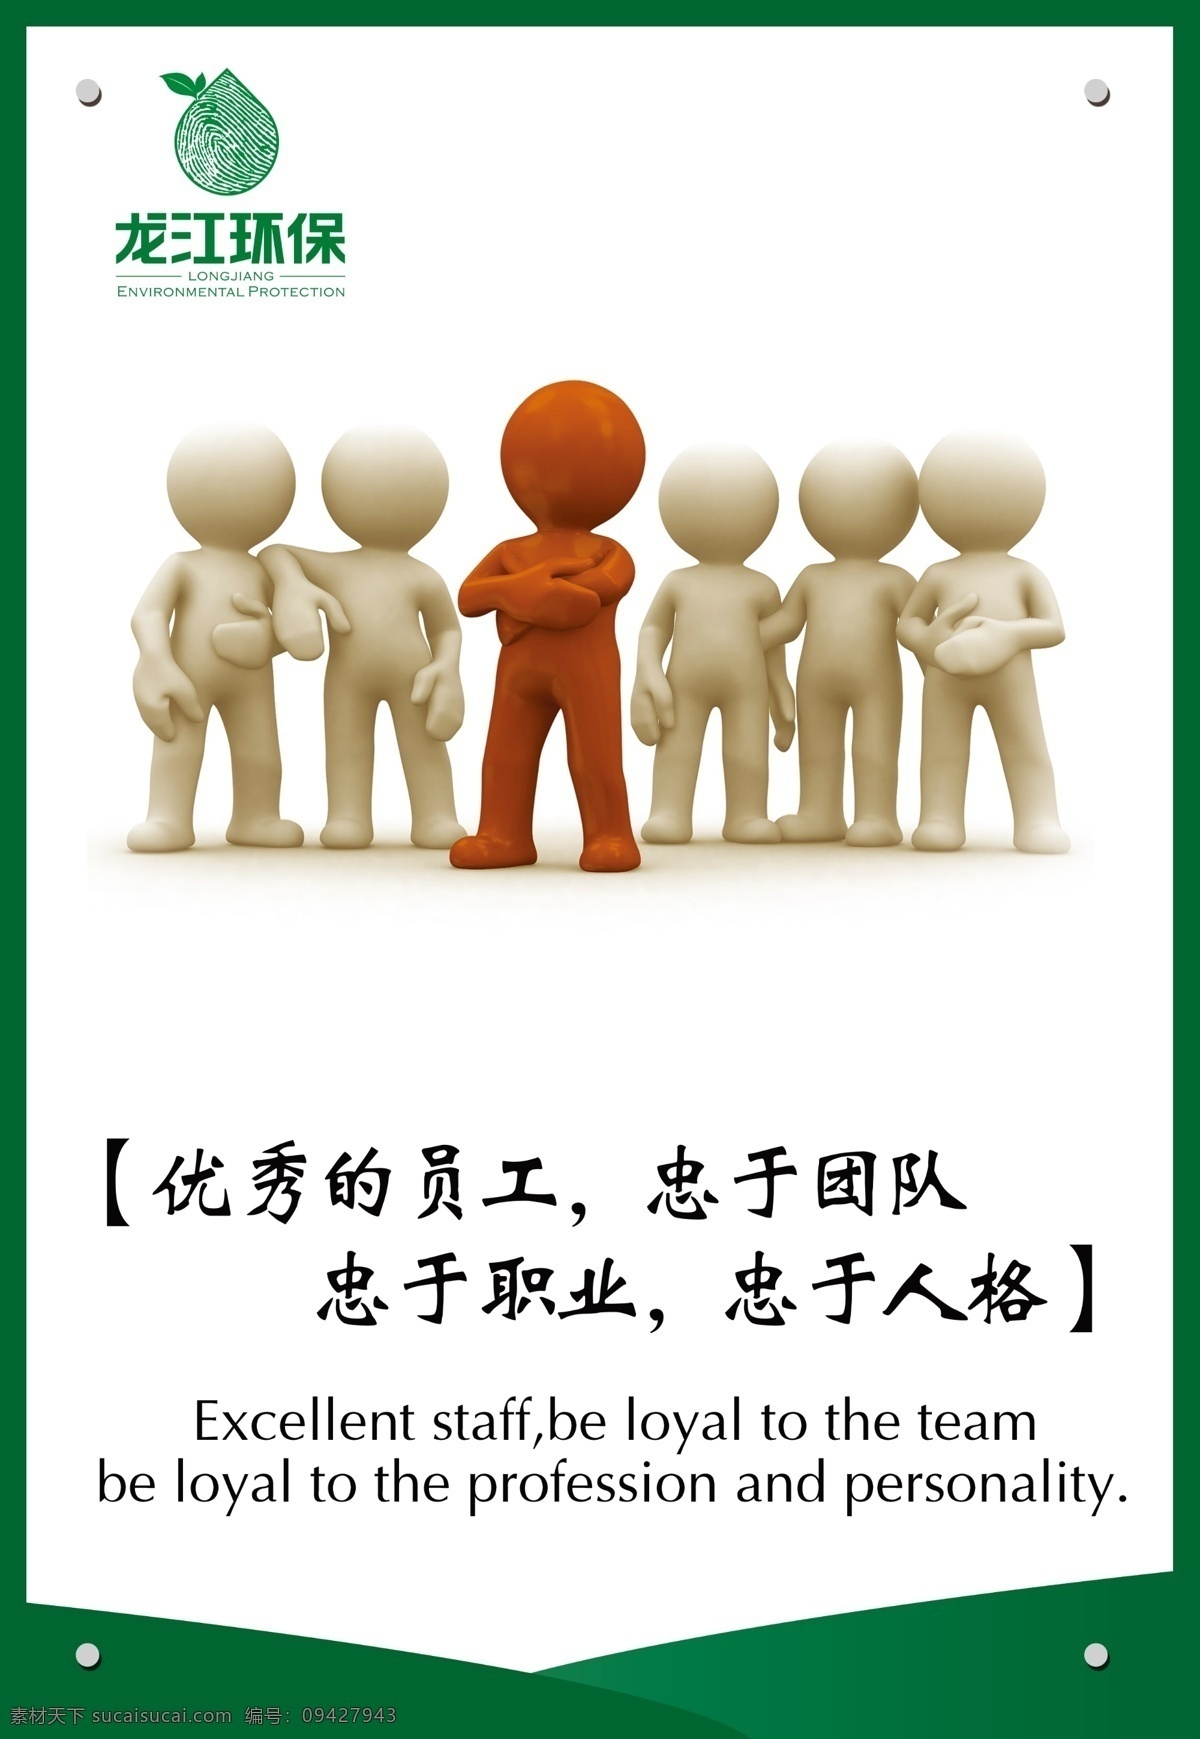 优秀员工 团队 小人 展板 企业文化 文化 企业形象 龙江环保 企业标语 环保 水域